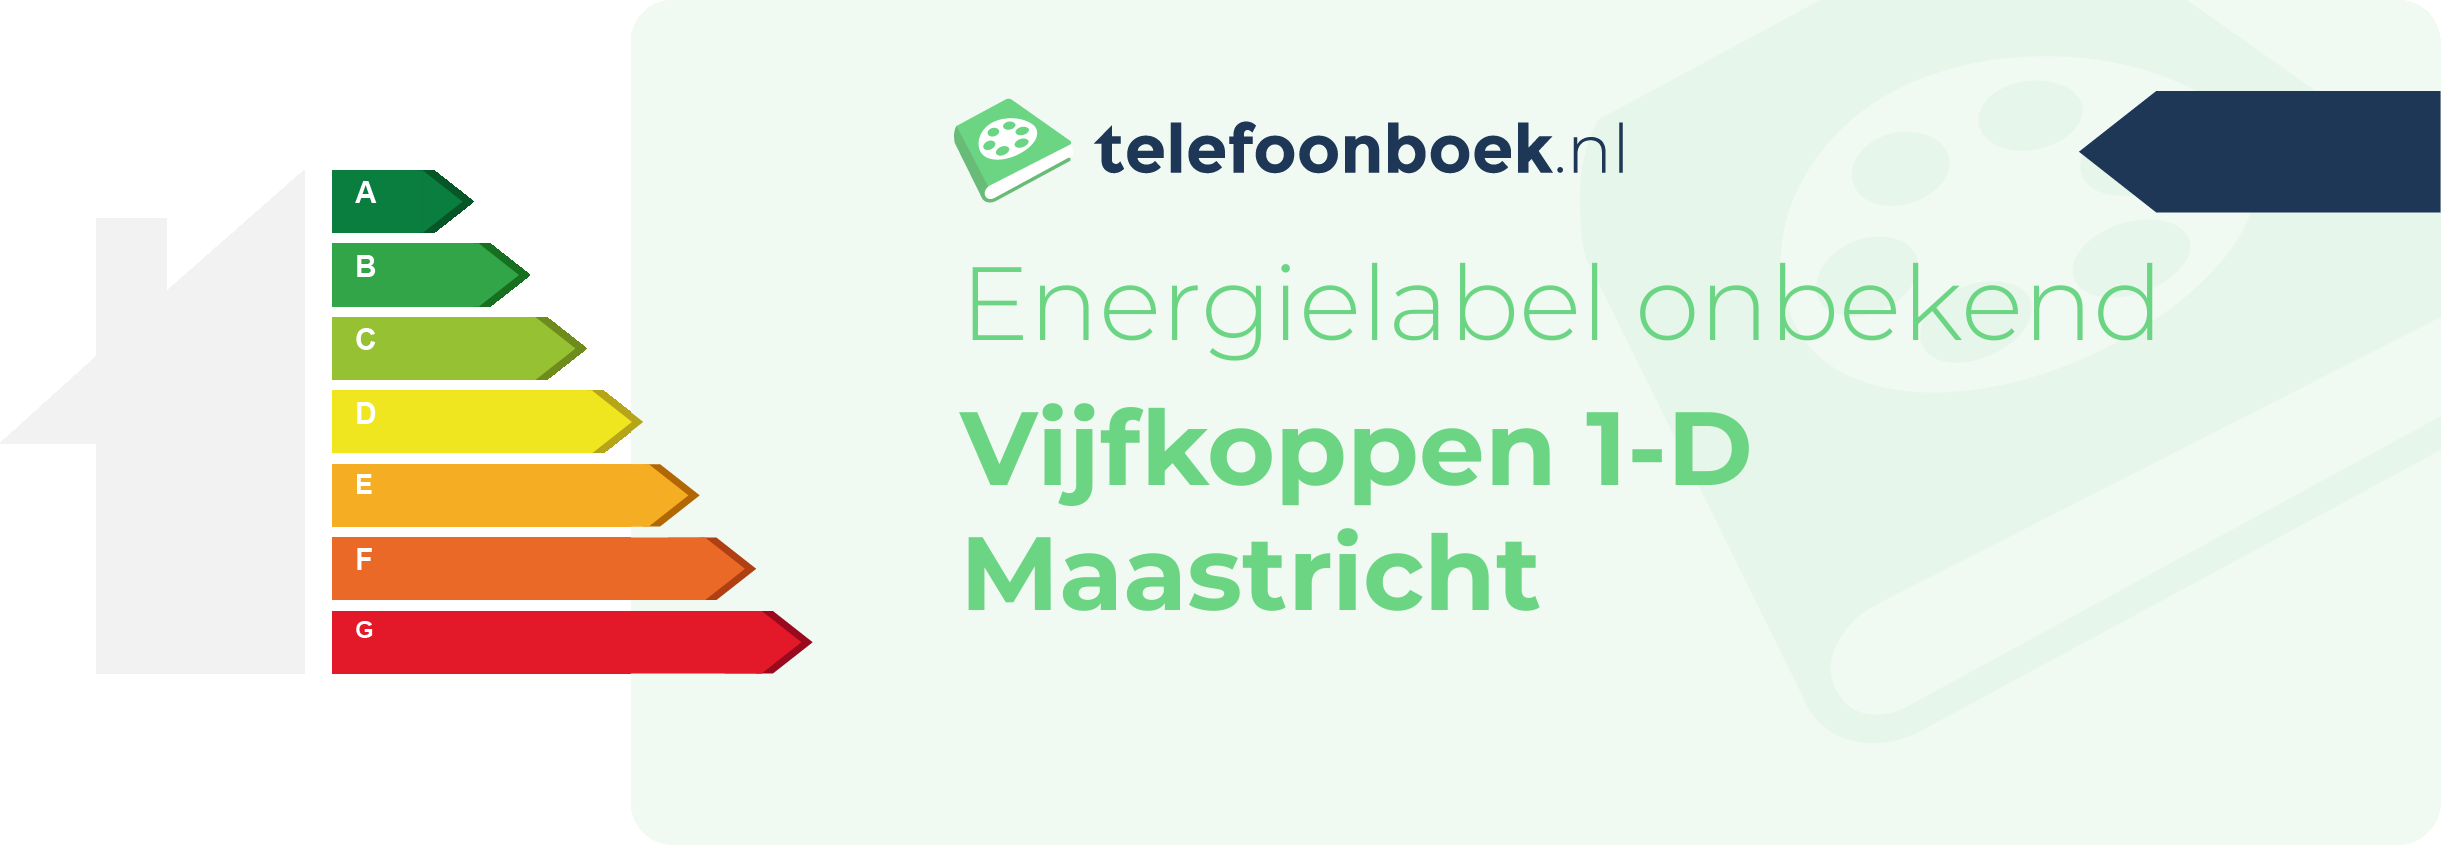 Energielabel Vijfkoppen 1-D Maastricht